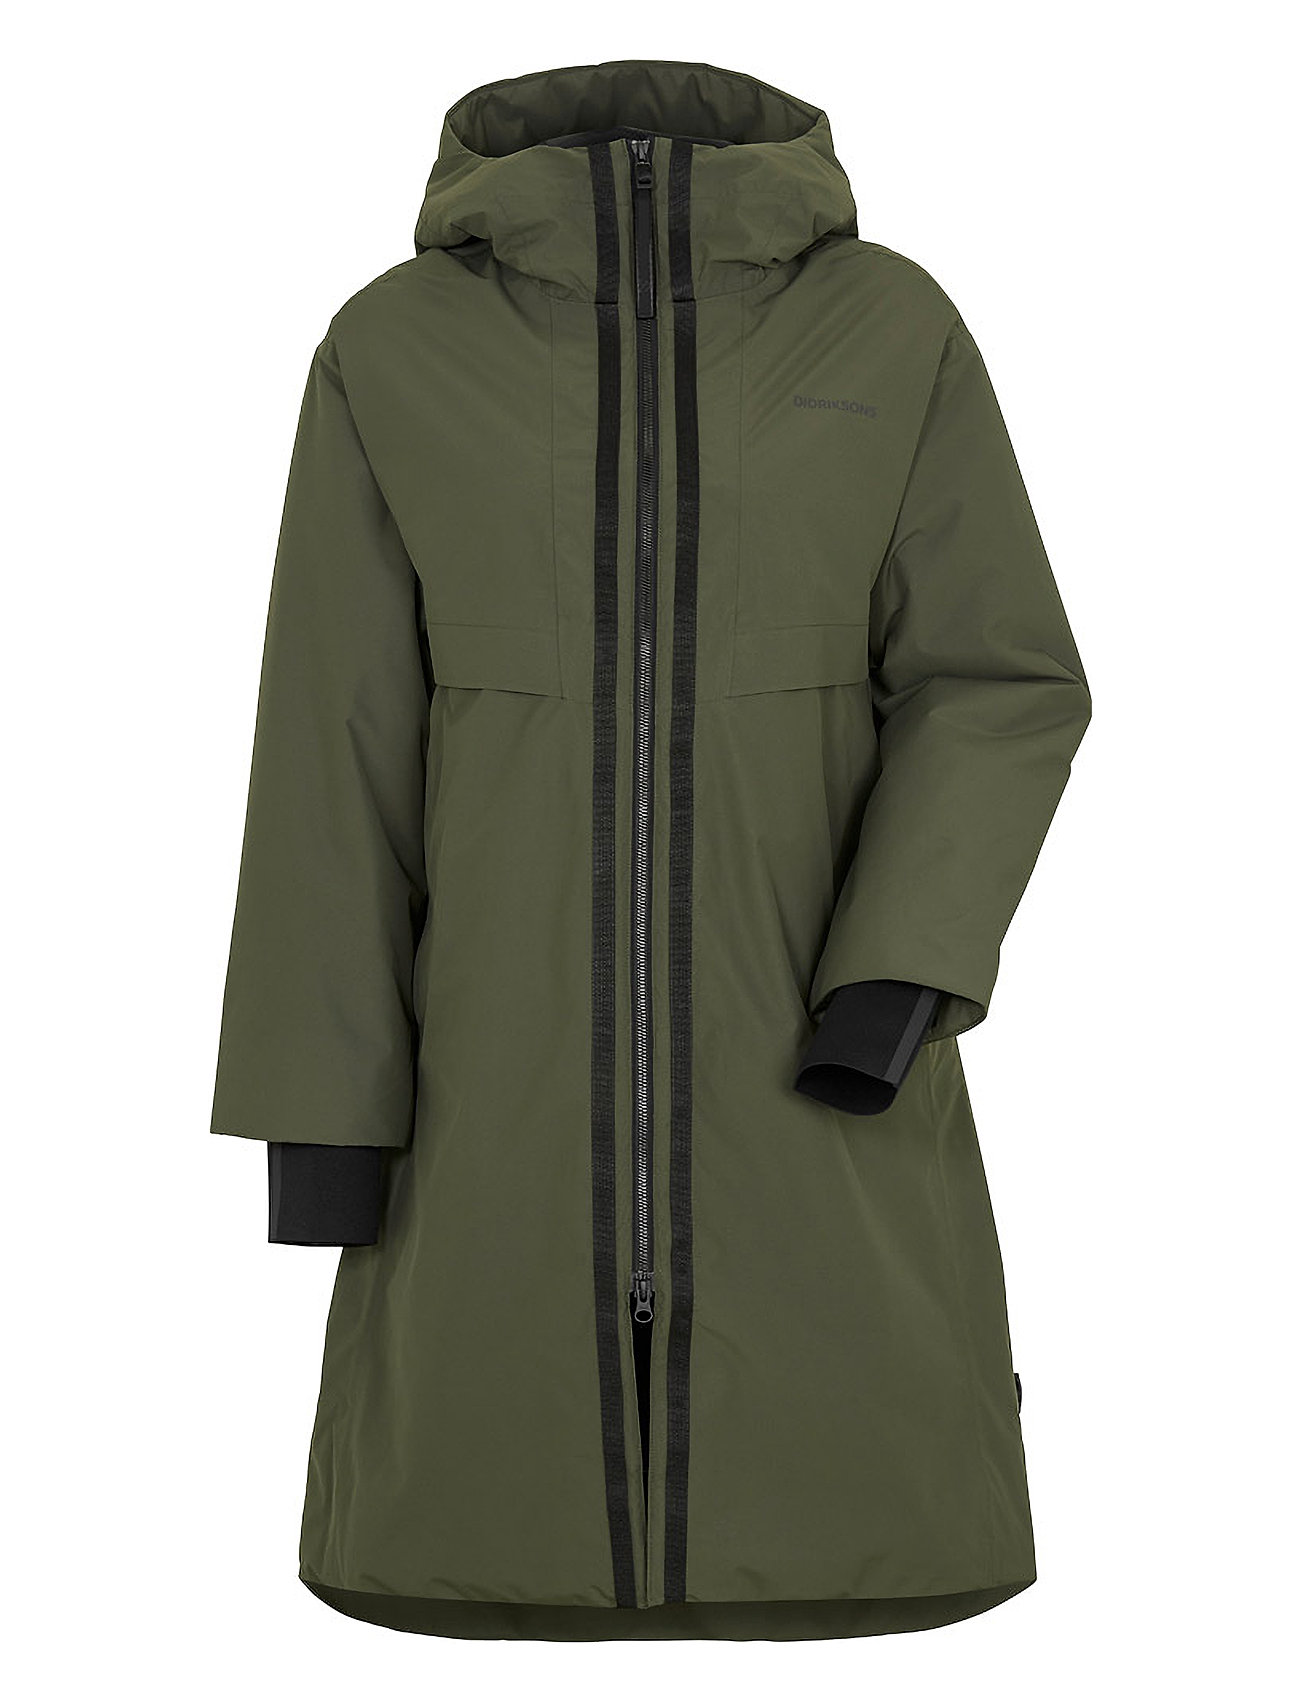 Didriksons Aino Wns Parka 4 – jackets & coats – shop at Booztlet